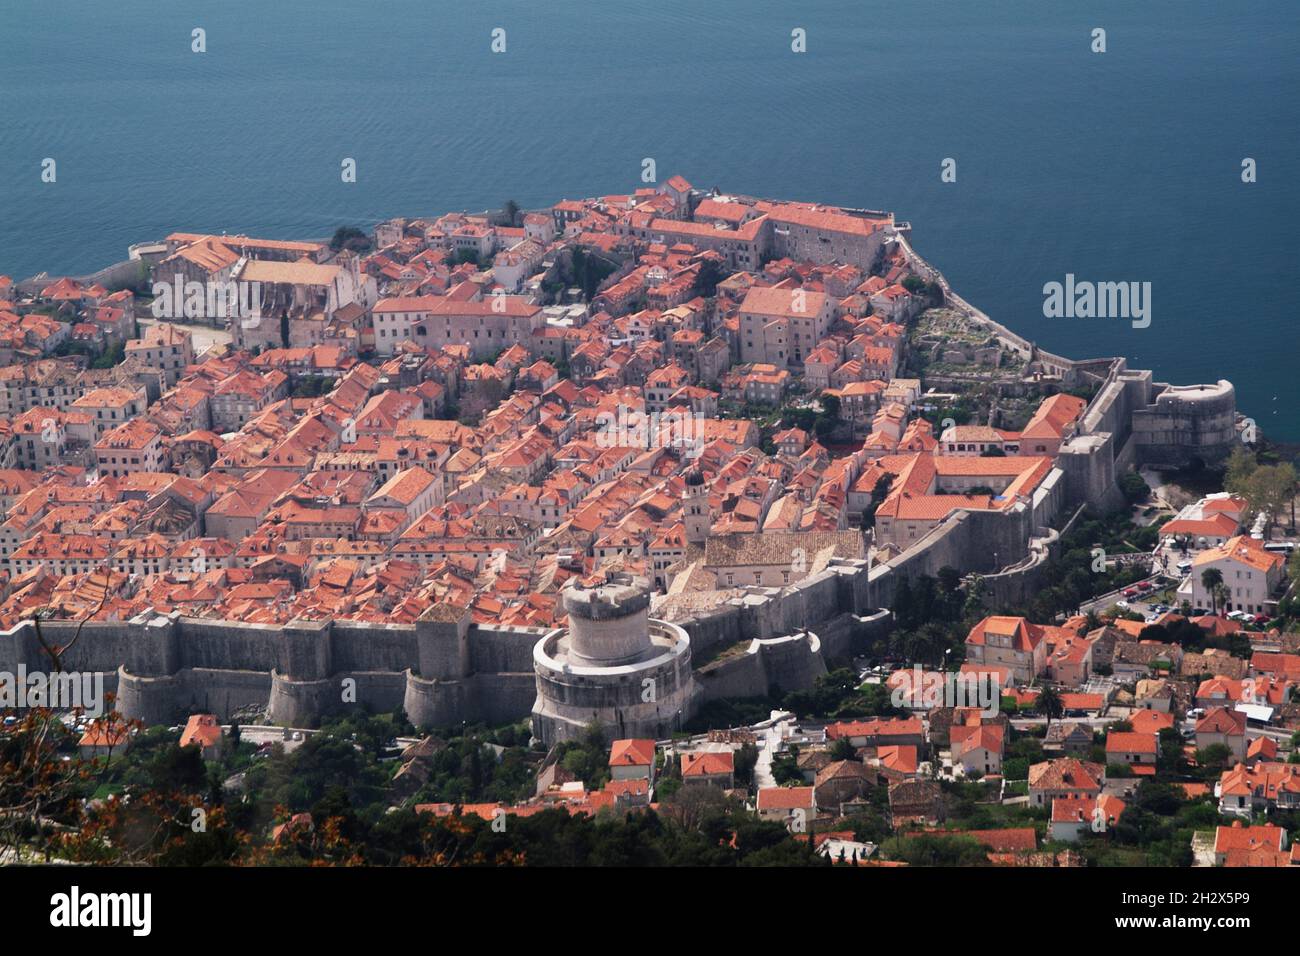 Europa, Kroatien, Dalmatien, Dubrovnik, Blick auf die Altstadt mit Stadtmauer Minceta-Turm | Europe, Croatia, Dalmatia, Dubrovnik, view of the old cit Stock Photo